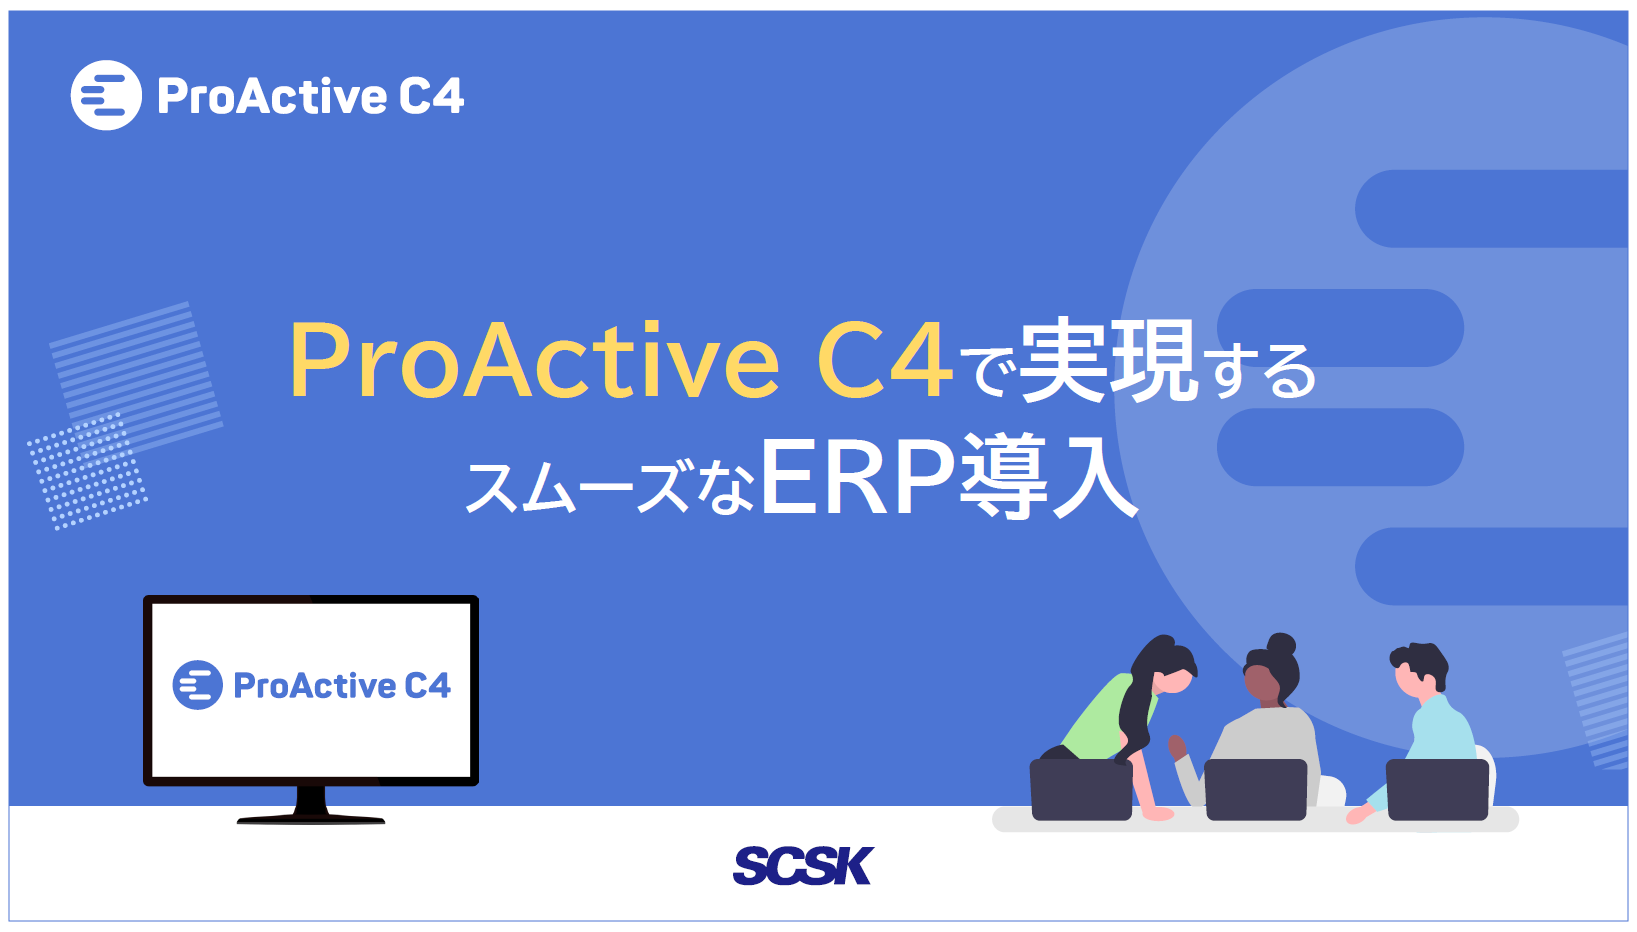 ProActive C4で実現するスムーズなERP導入